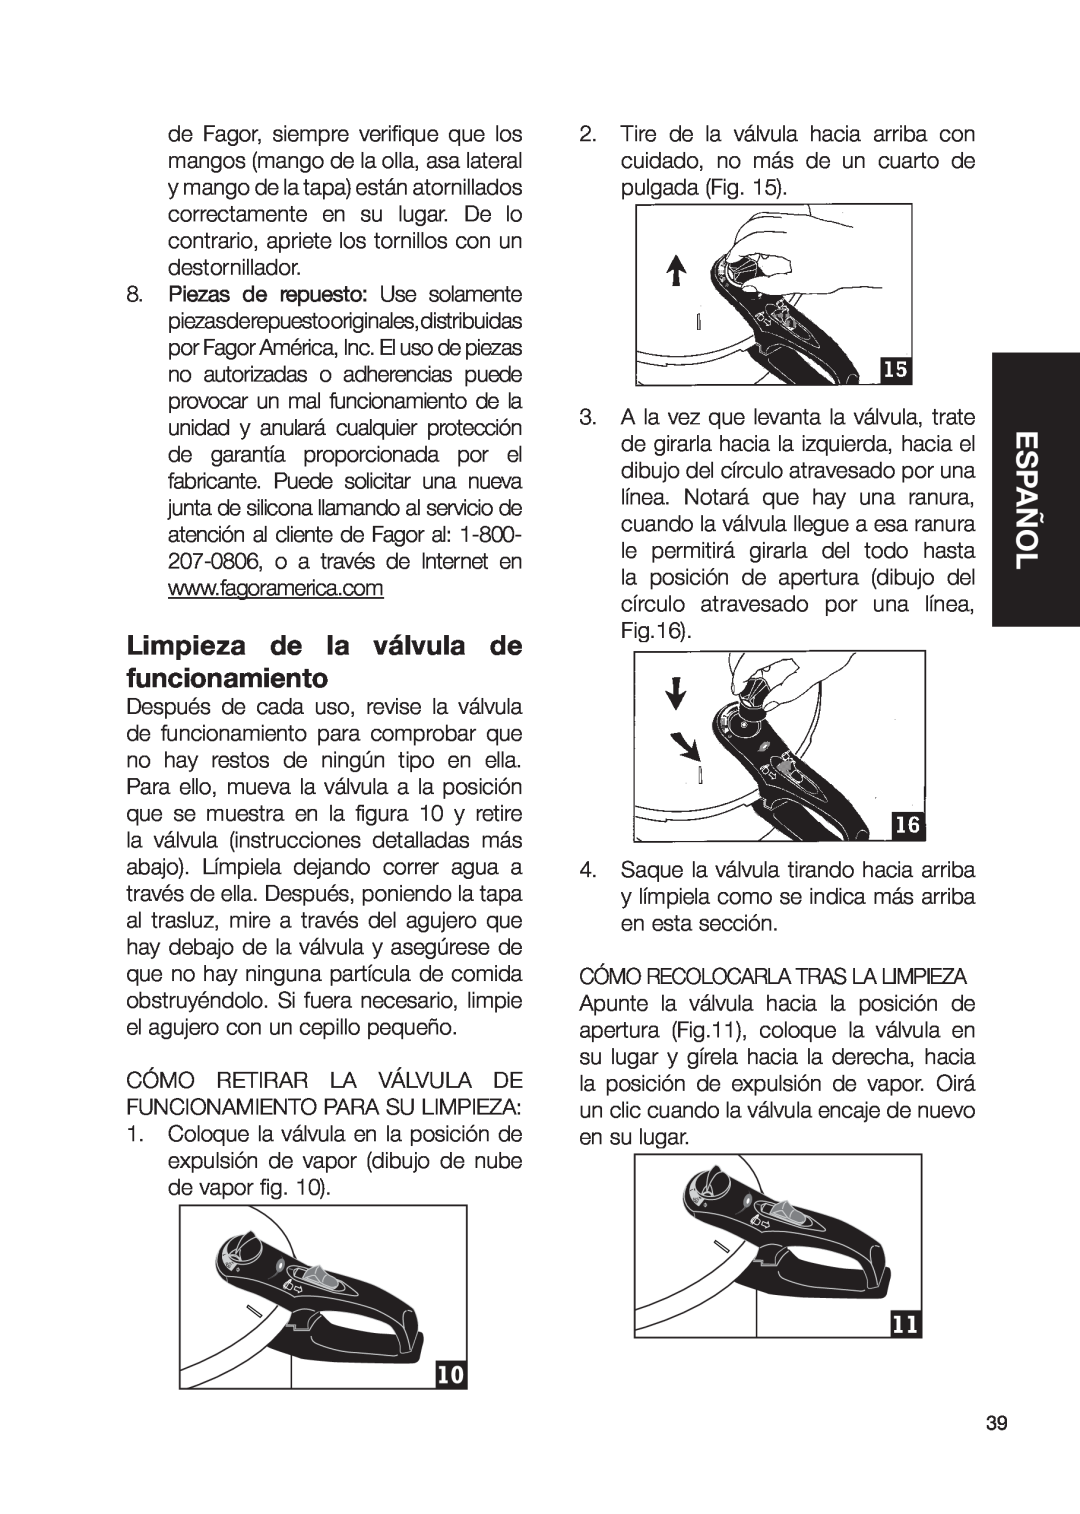 Fagor America fagor duo pressure cooker user manual Limpieza de la válvula de funcionamiento, Español 